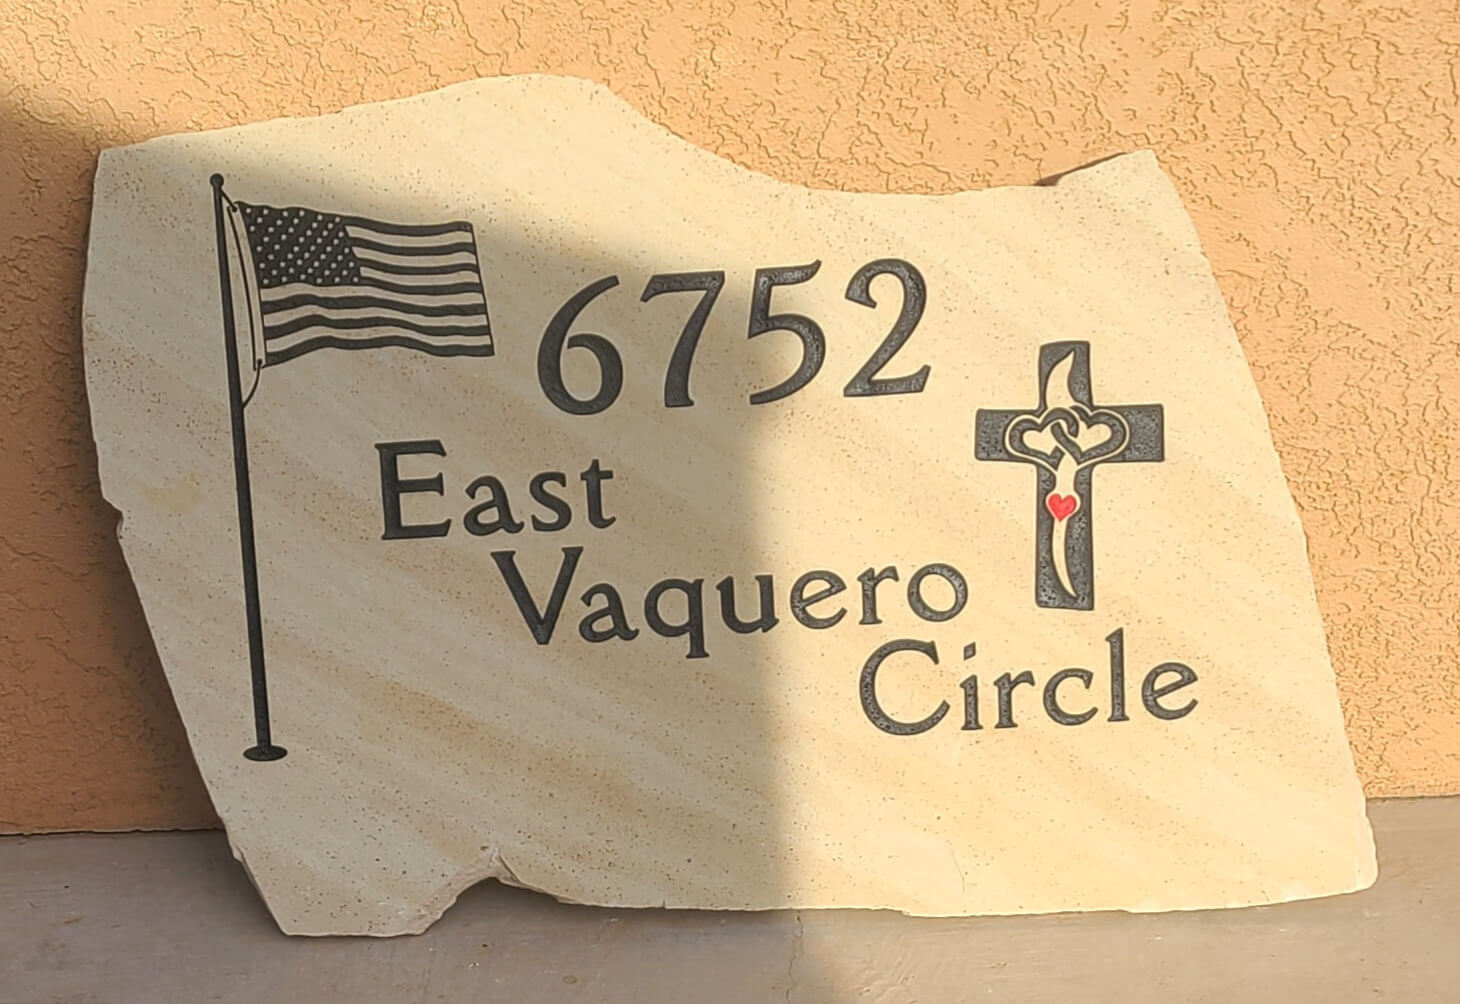 Flagston 6752 East Vaquero Circle